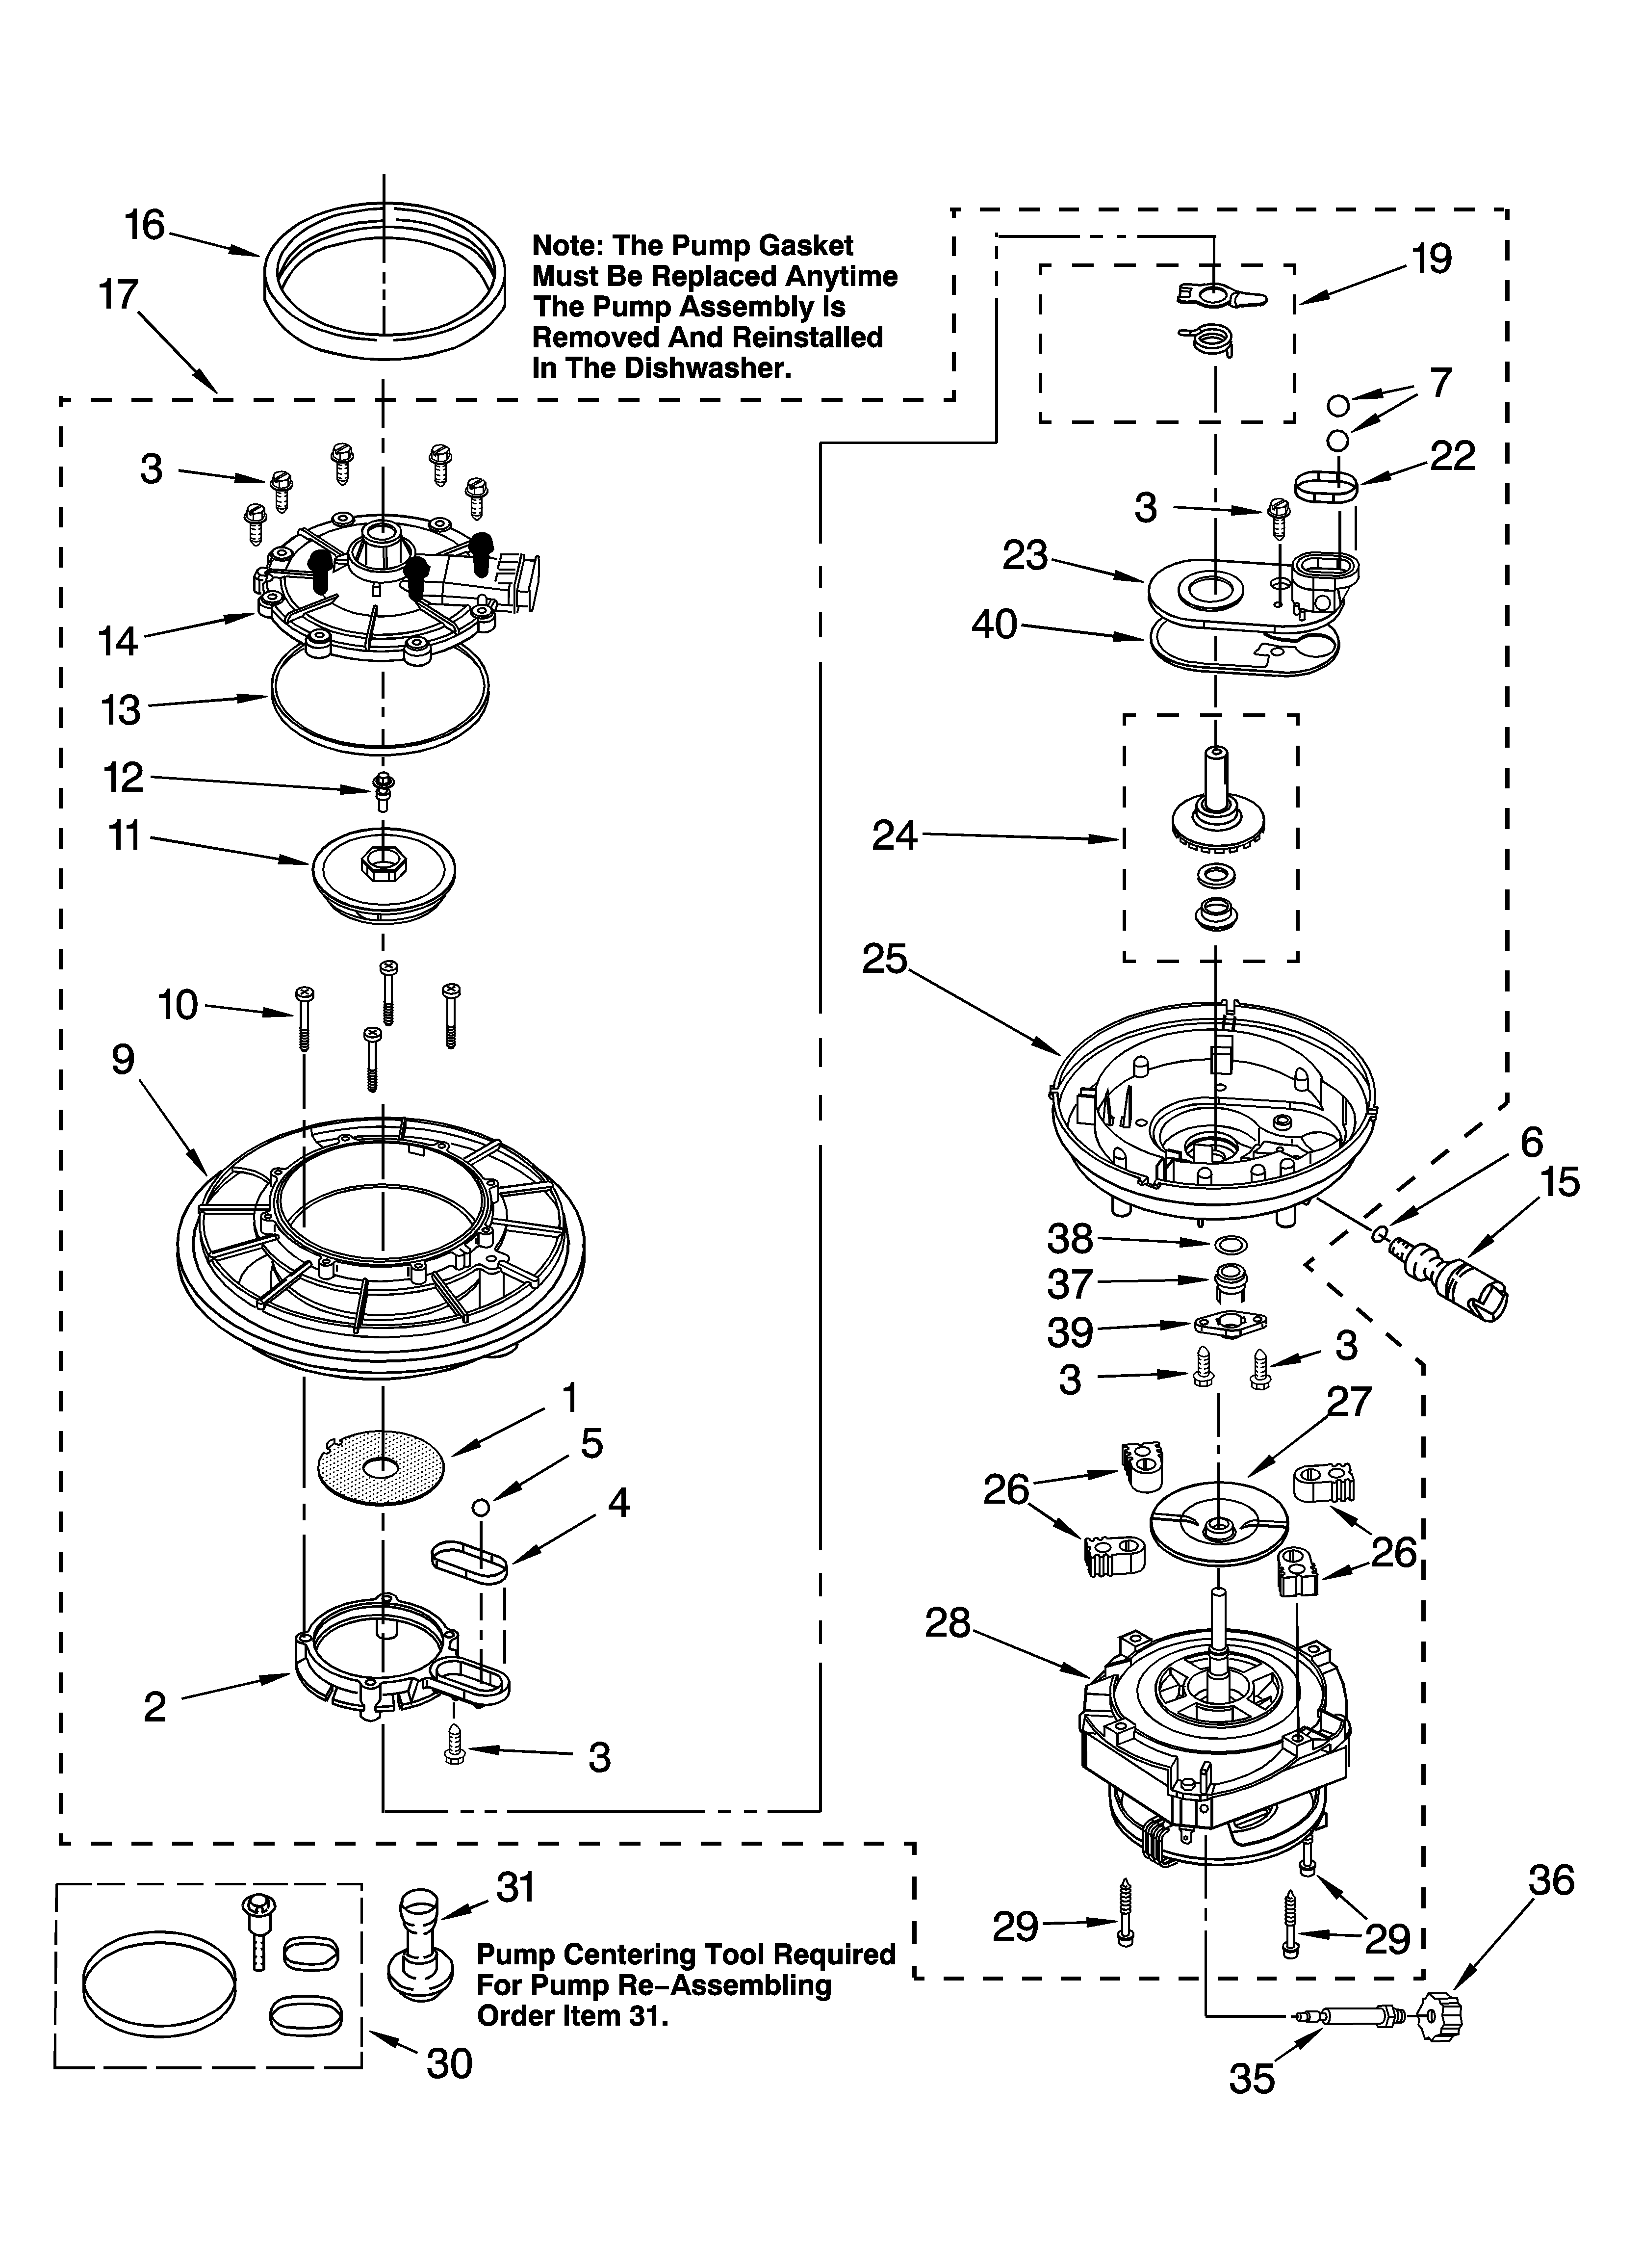 Pump And Motor Parts Diagram  U0026 Parts List For Model